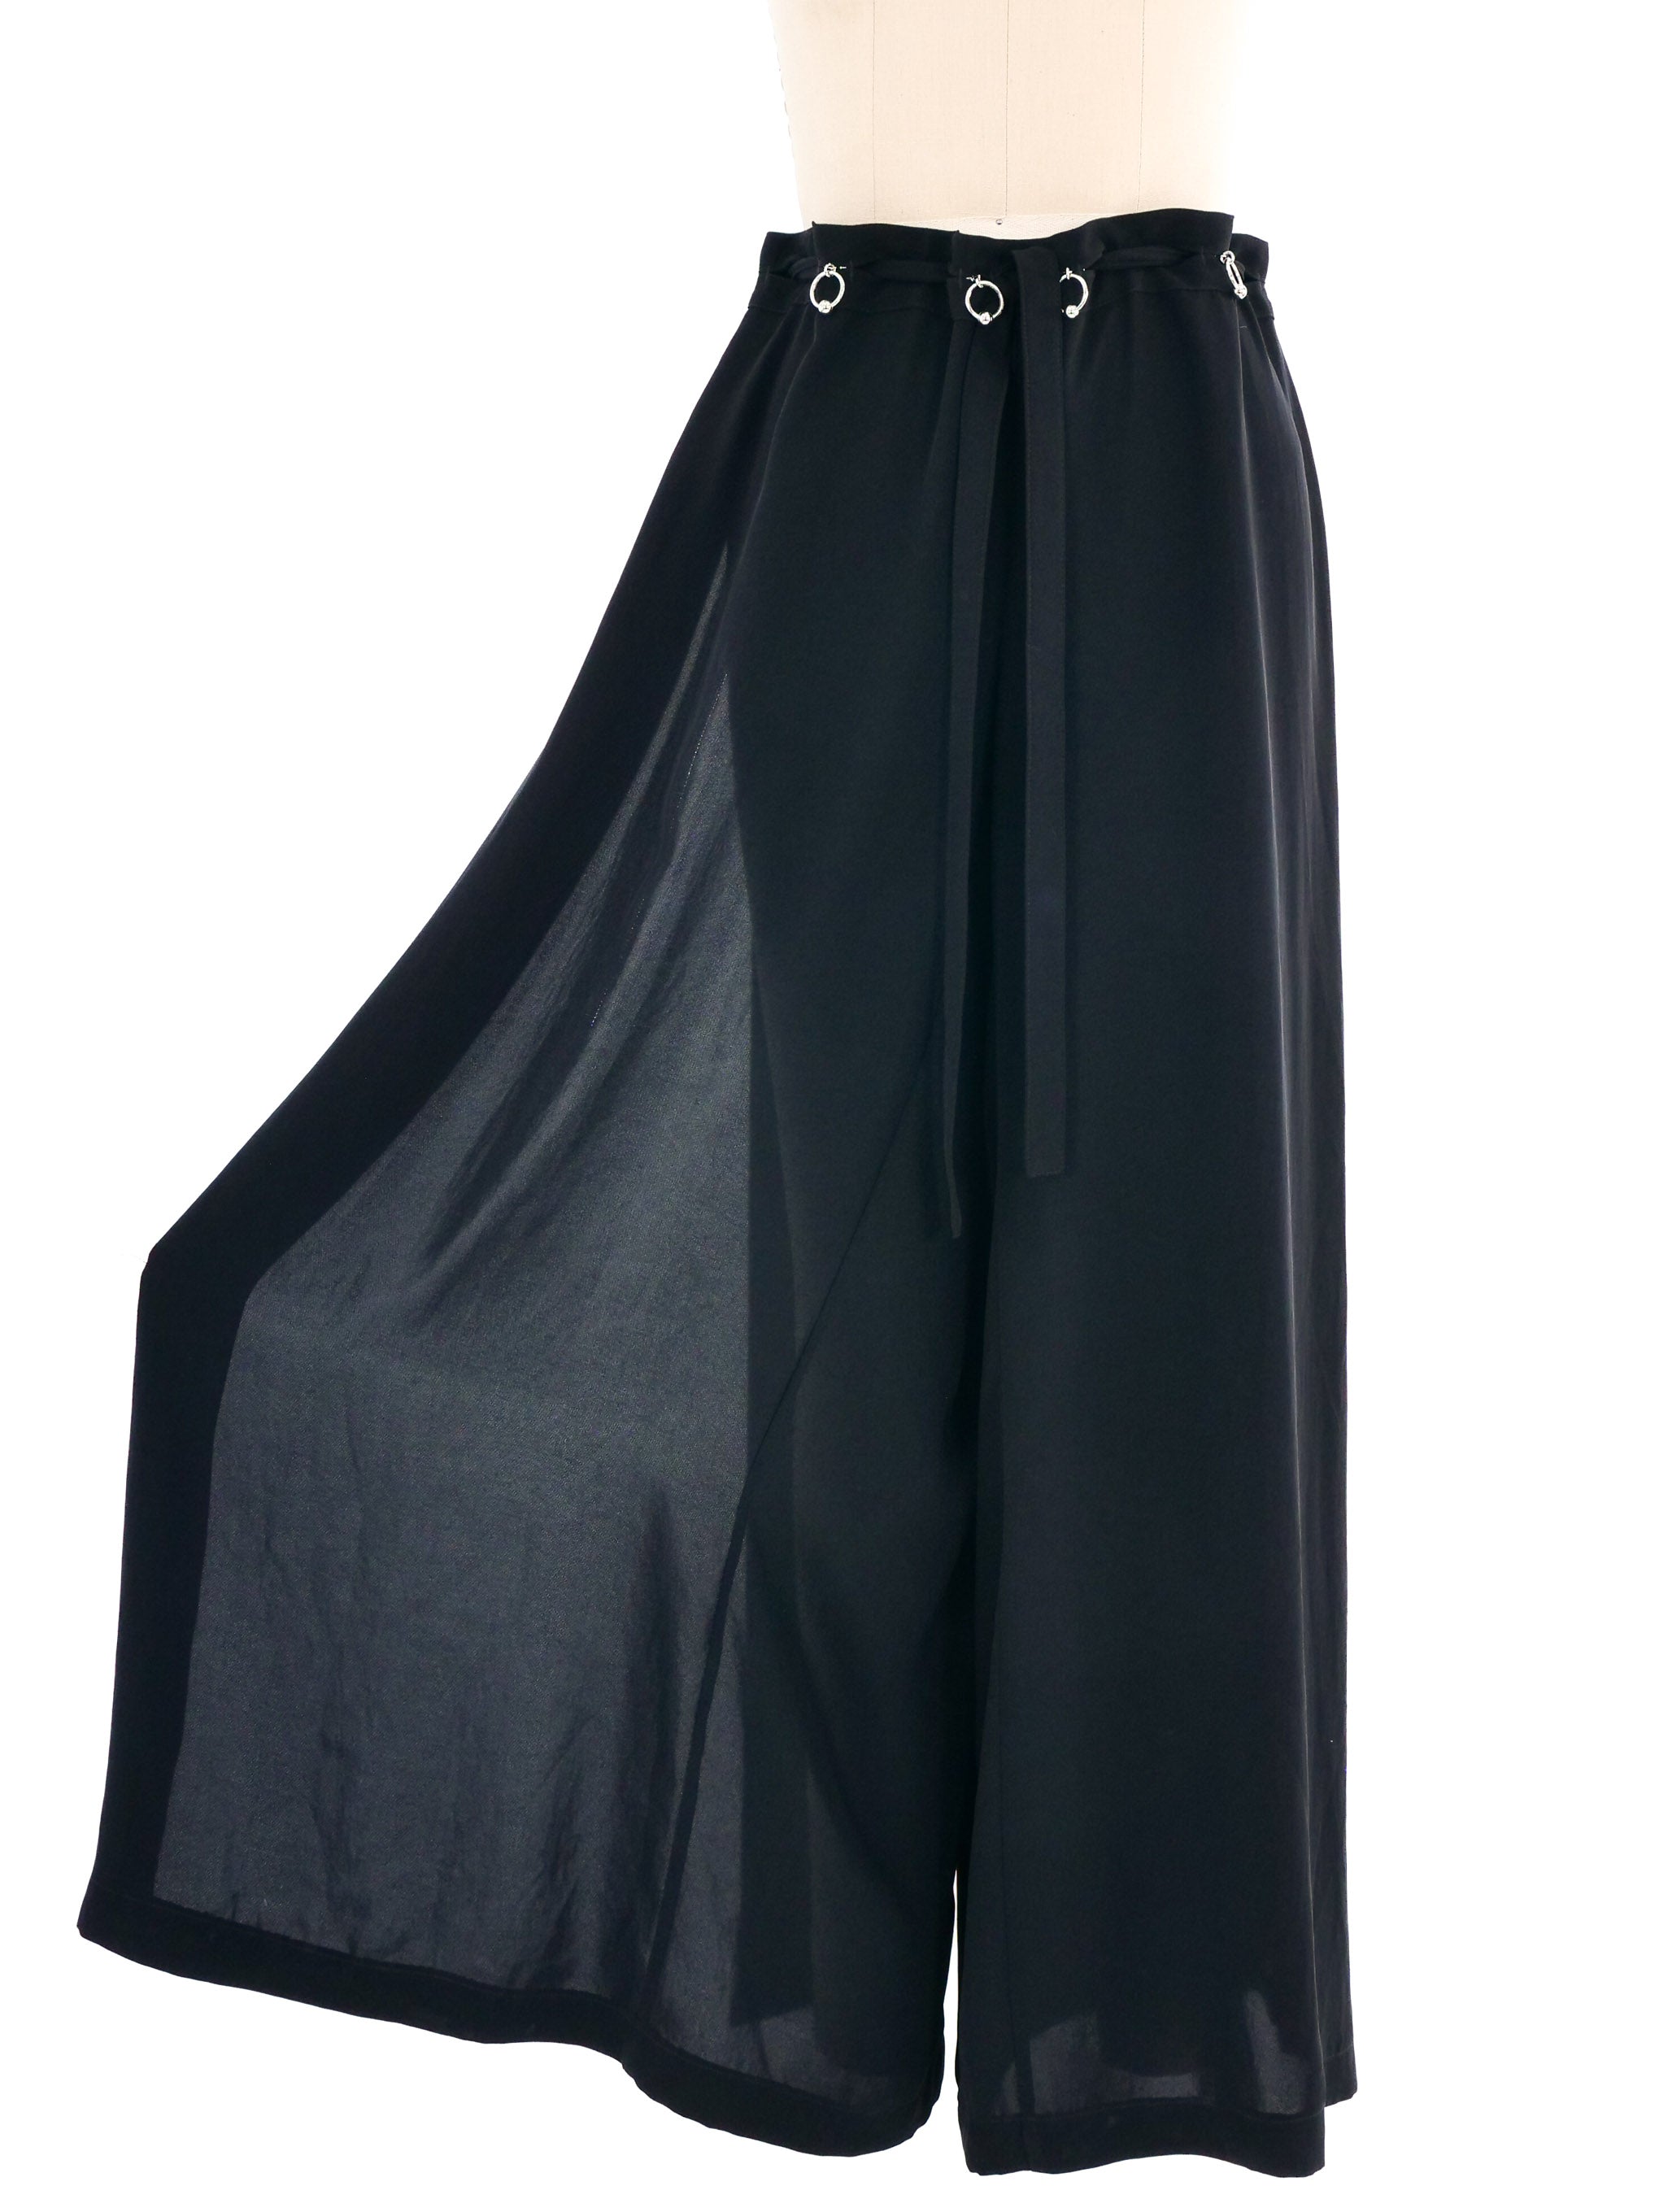 Buy Women Black High Waist Wide Leg Pants Online at Sassafras